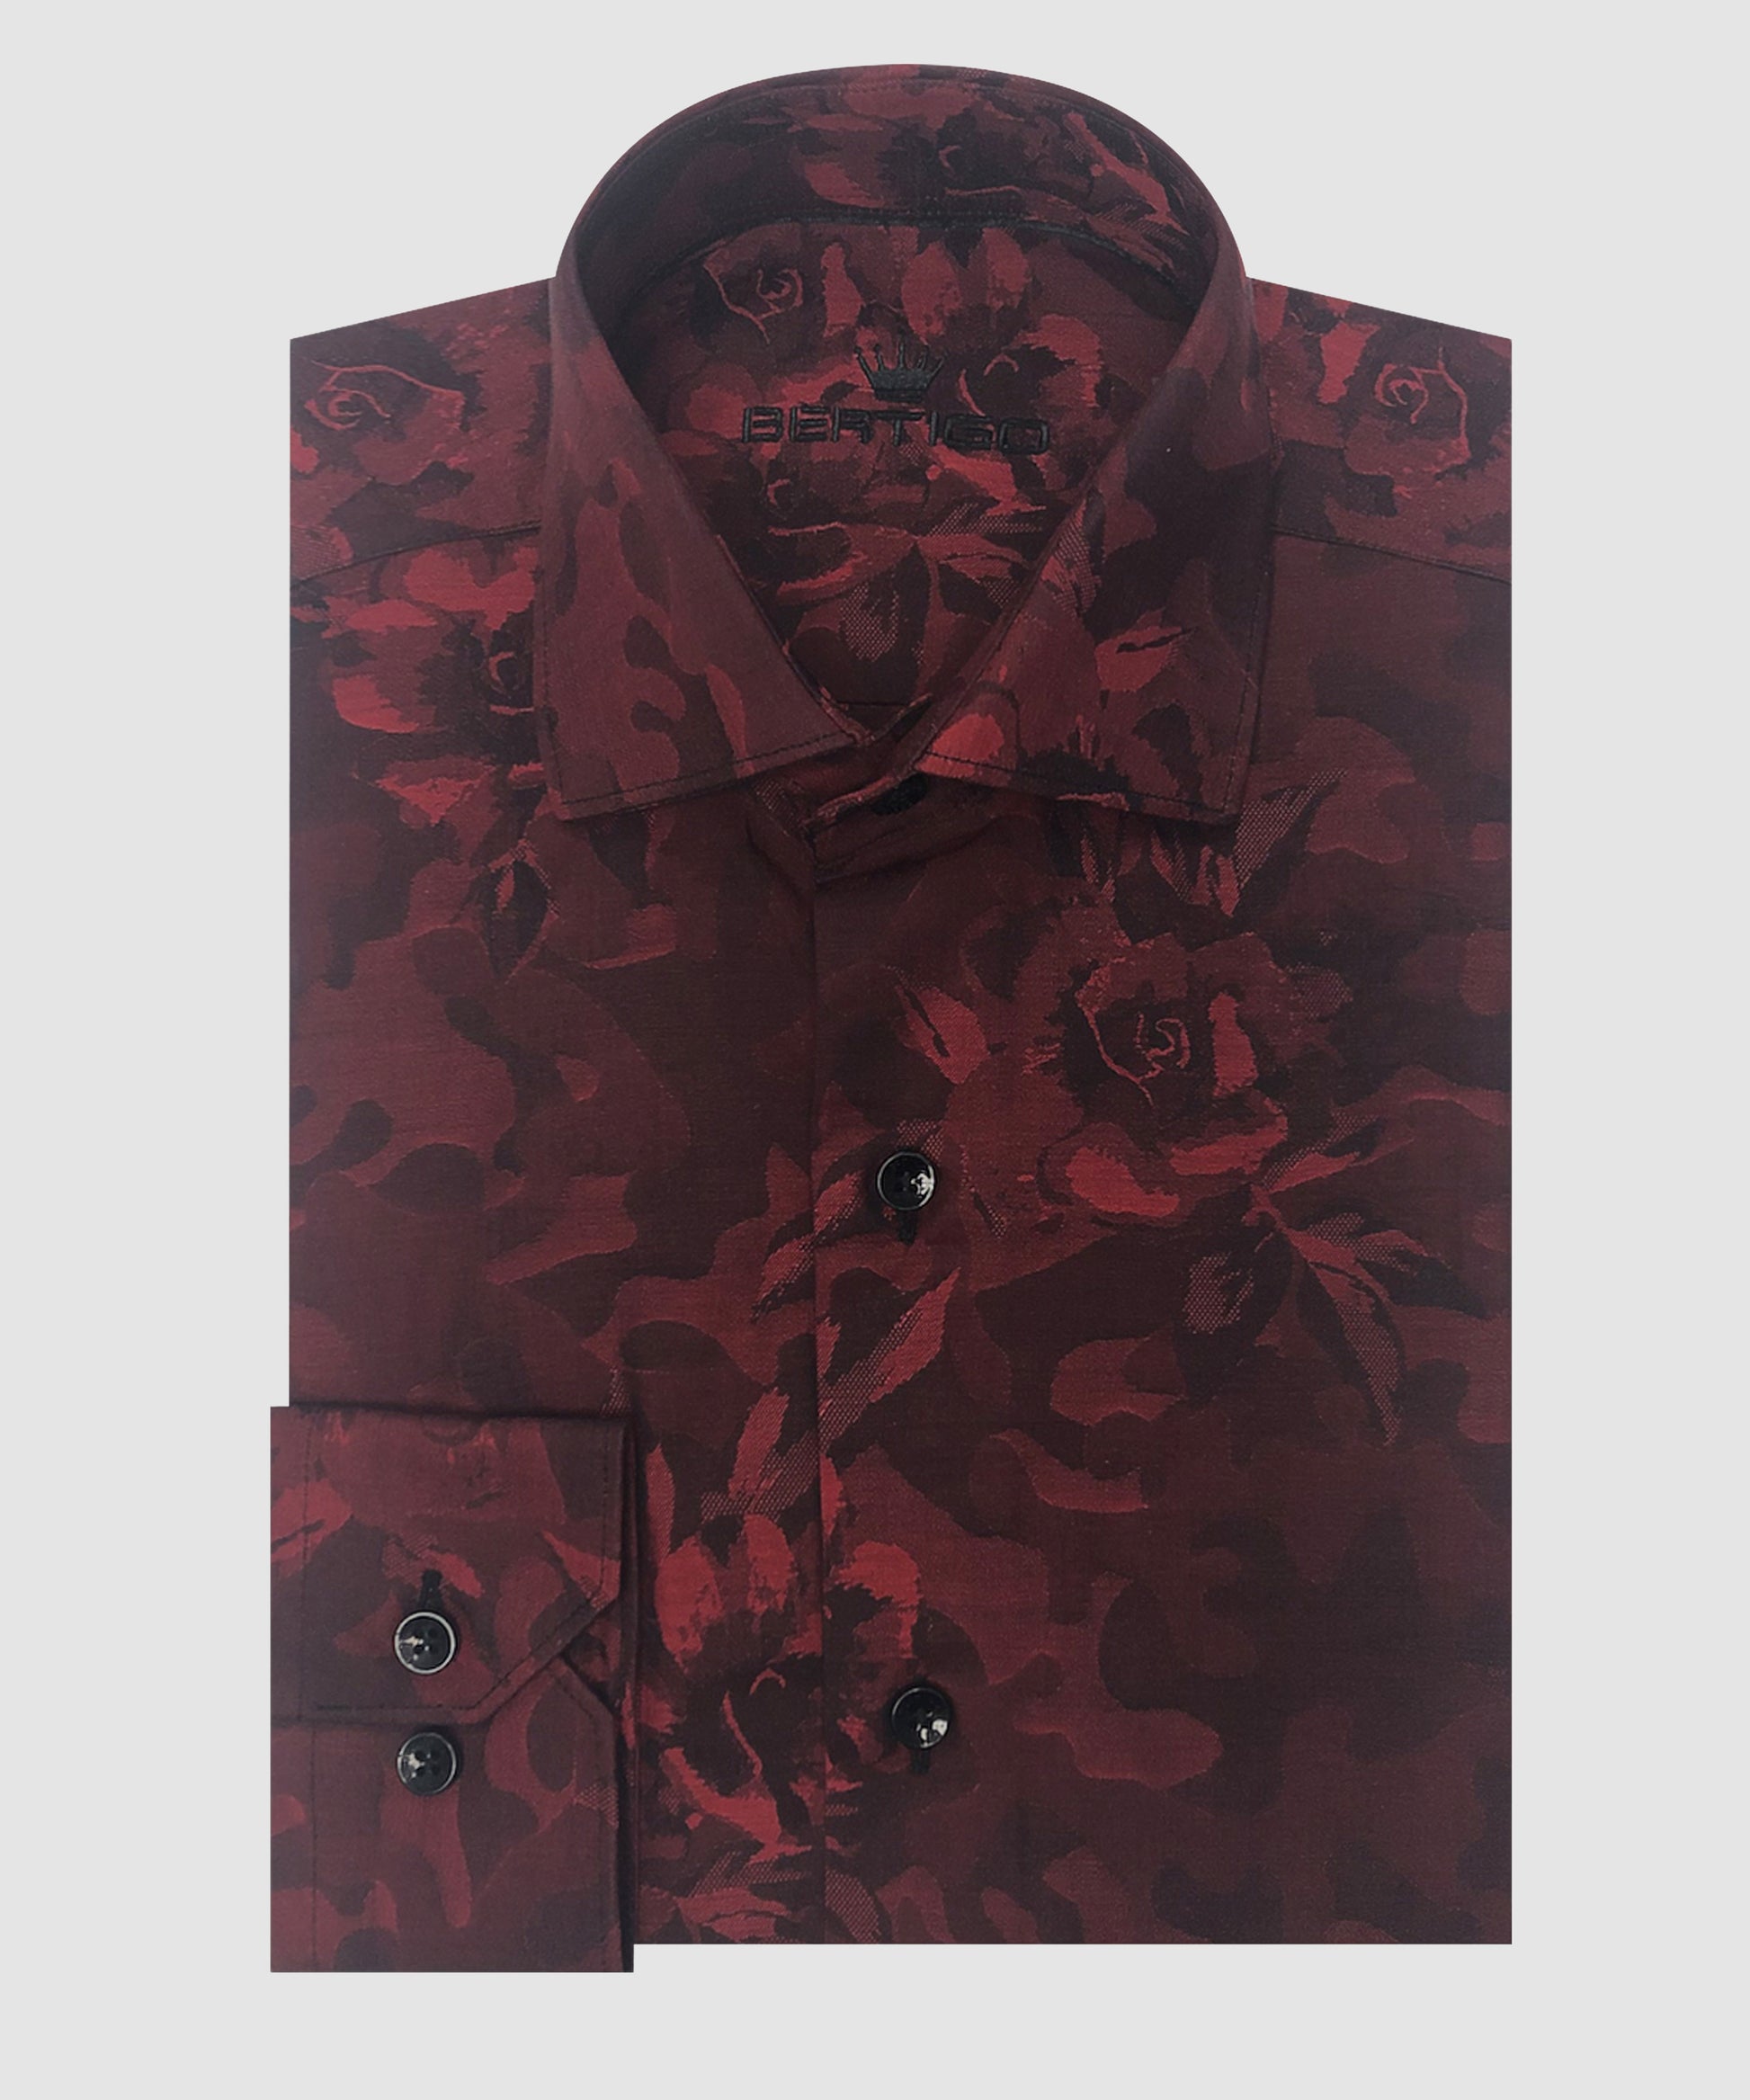 BERTIGO Burgundy/Red Flower Shirt